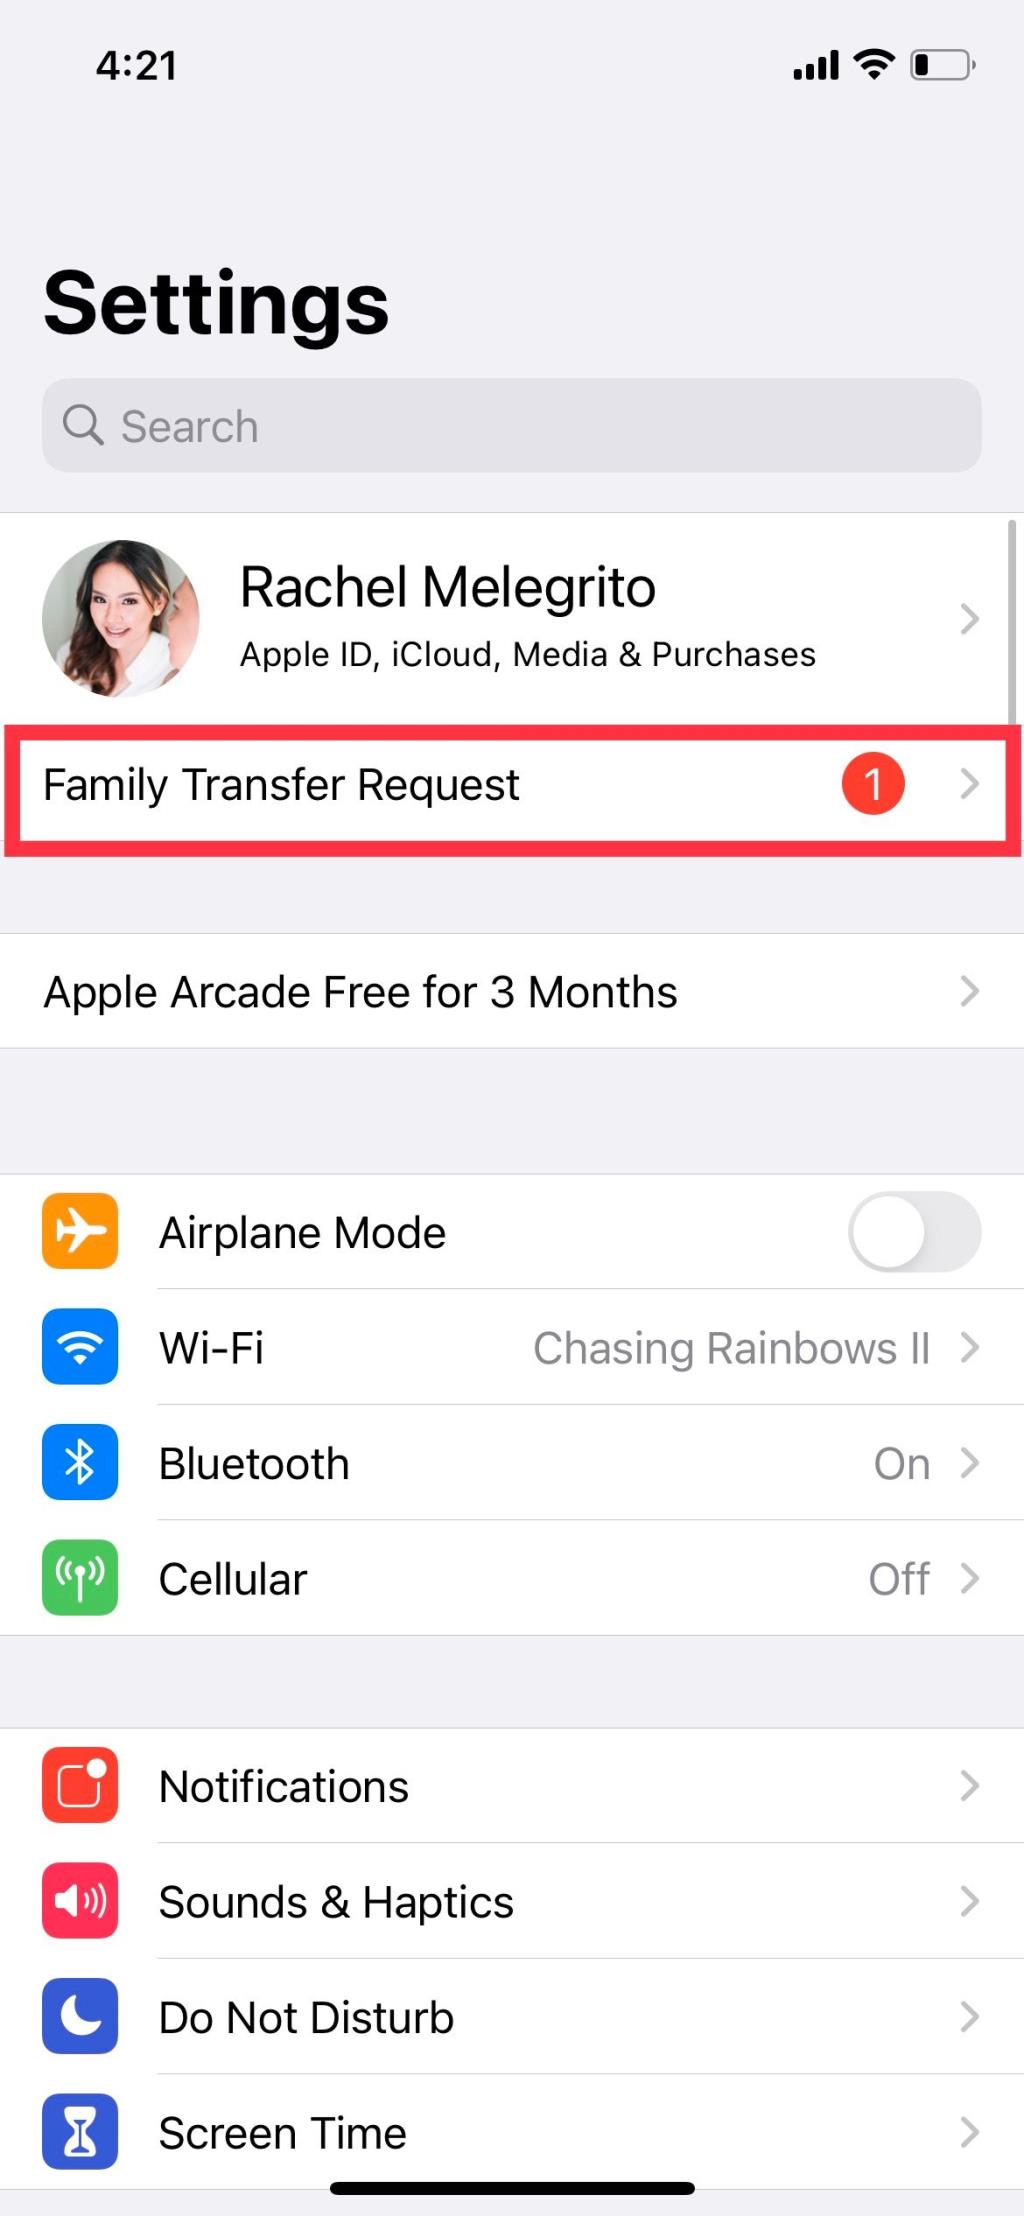 Cách Ngừng Sử dụng Chia sẻ Gia đình Apple hoặc Xóa các Thành viên Gia đình Khác